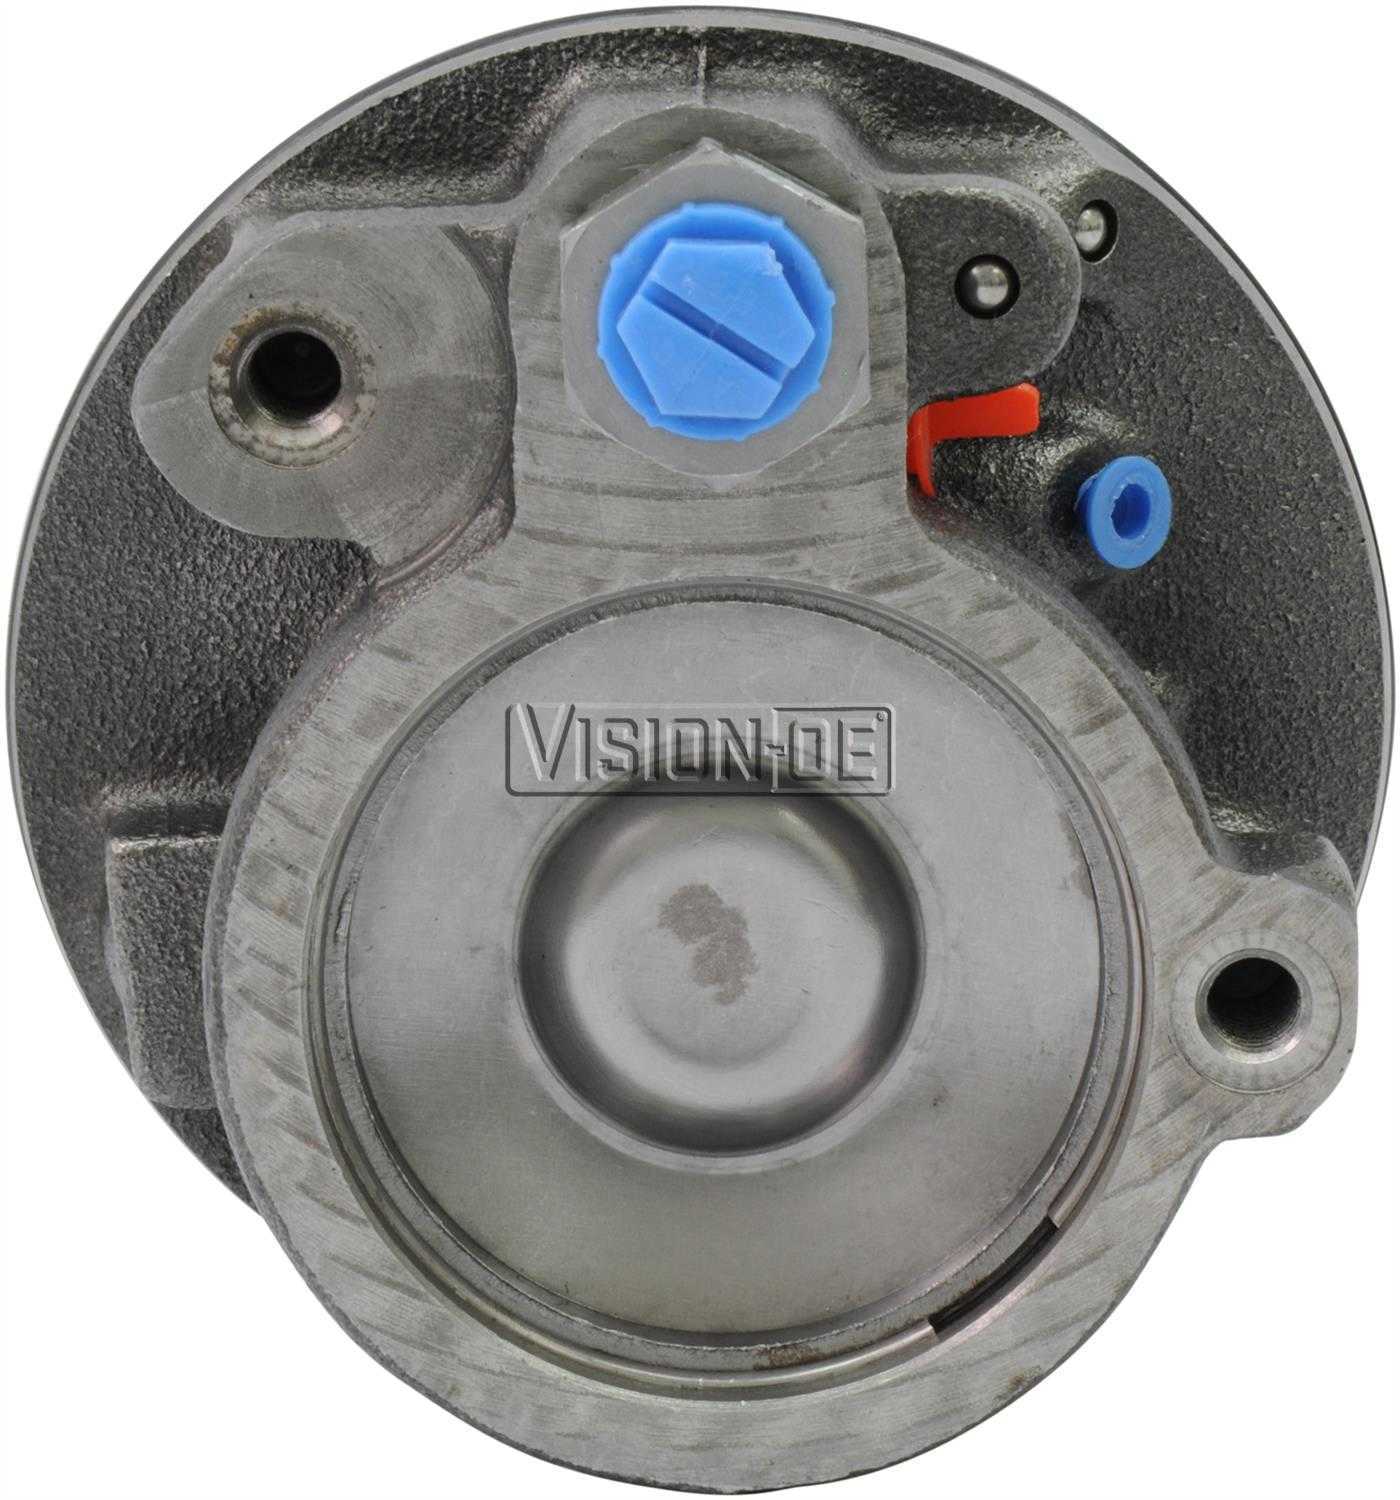 VISION-OE - Reman Power Steering Pump - VOE 732-0105